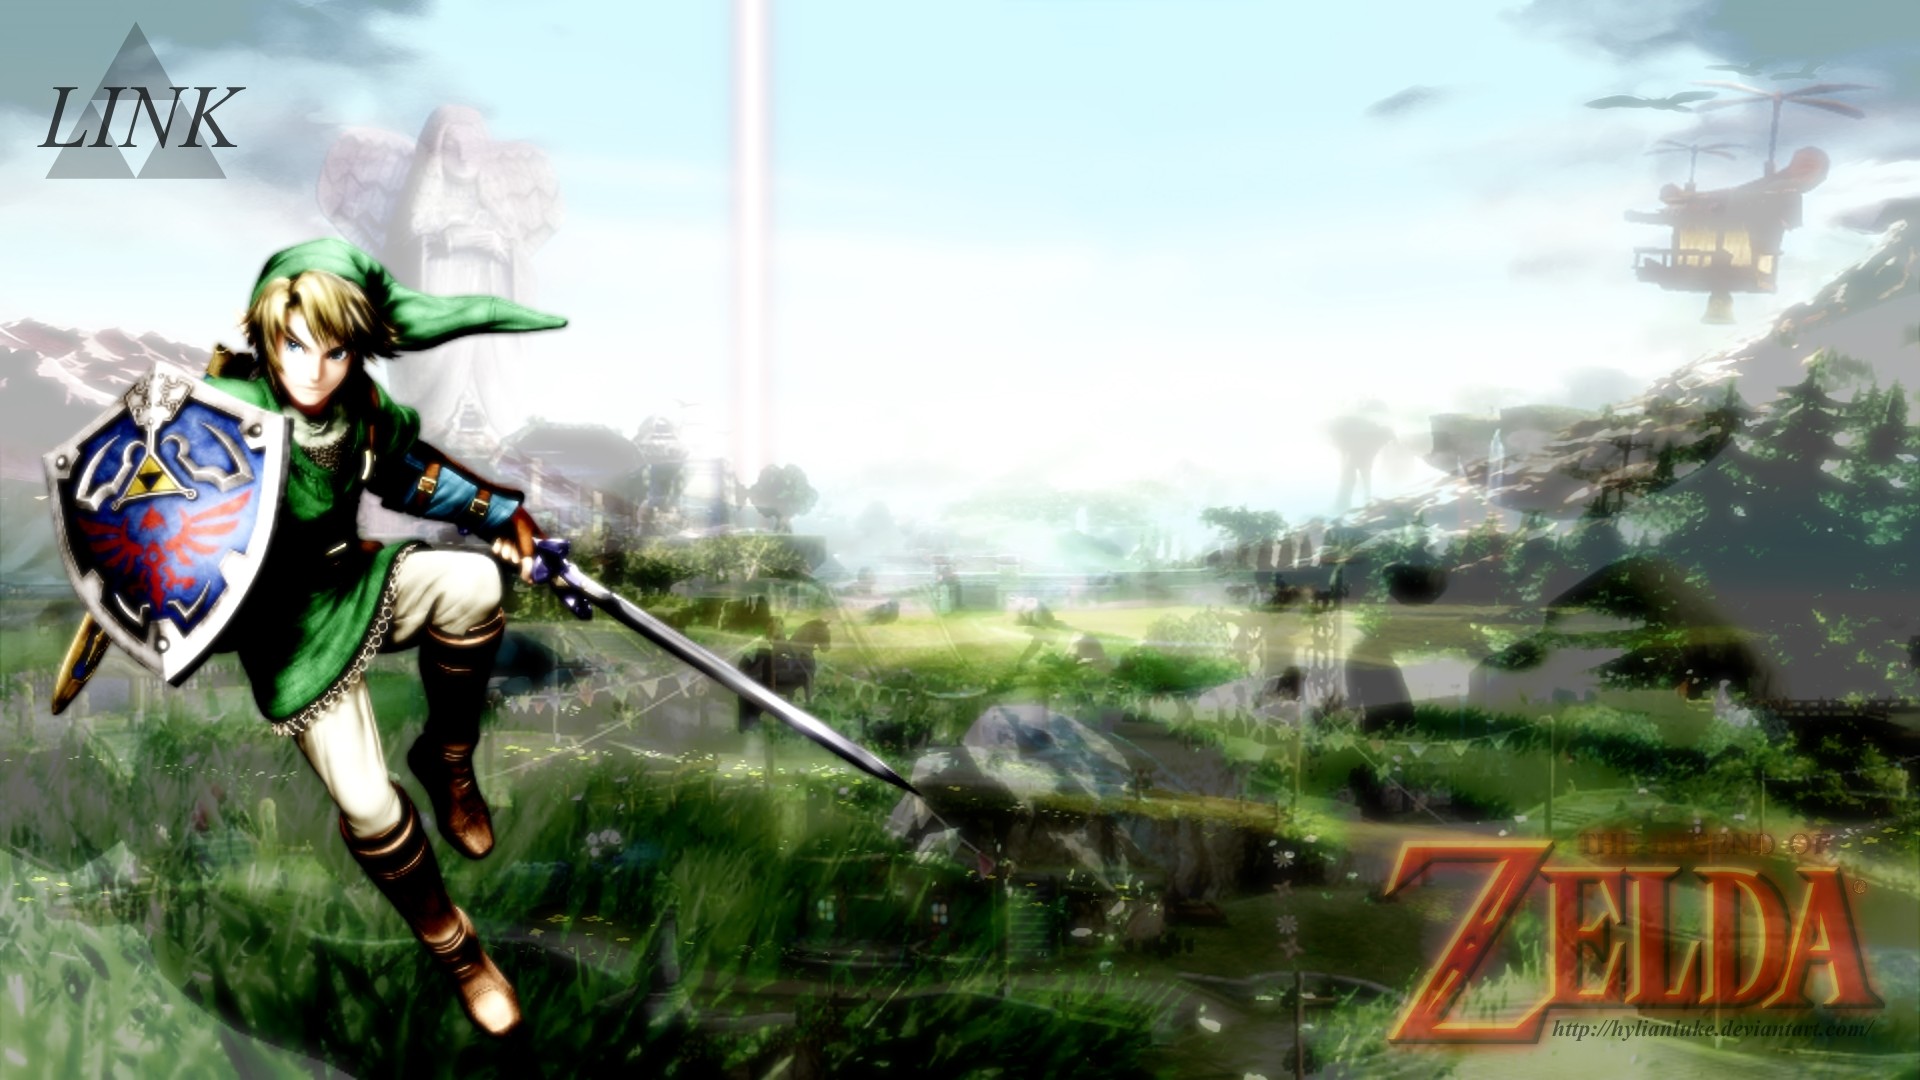 1920x1080 ... The Legend of Zelda Wallpaper - Link by HylianLuke